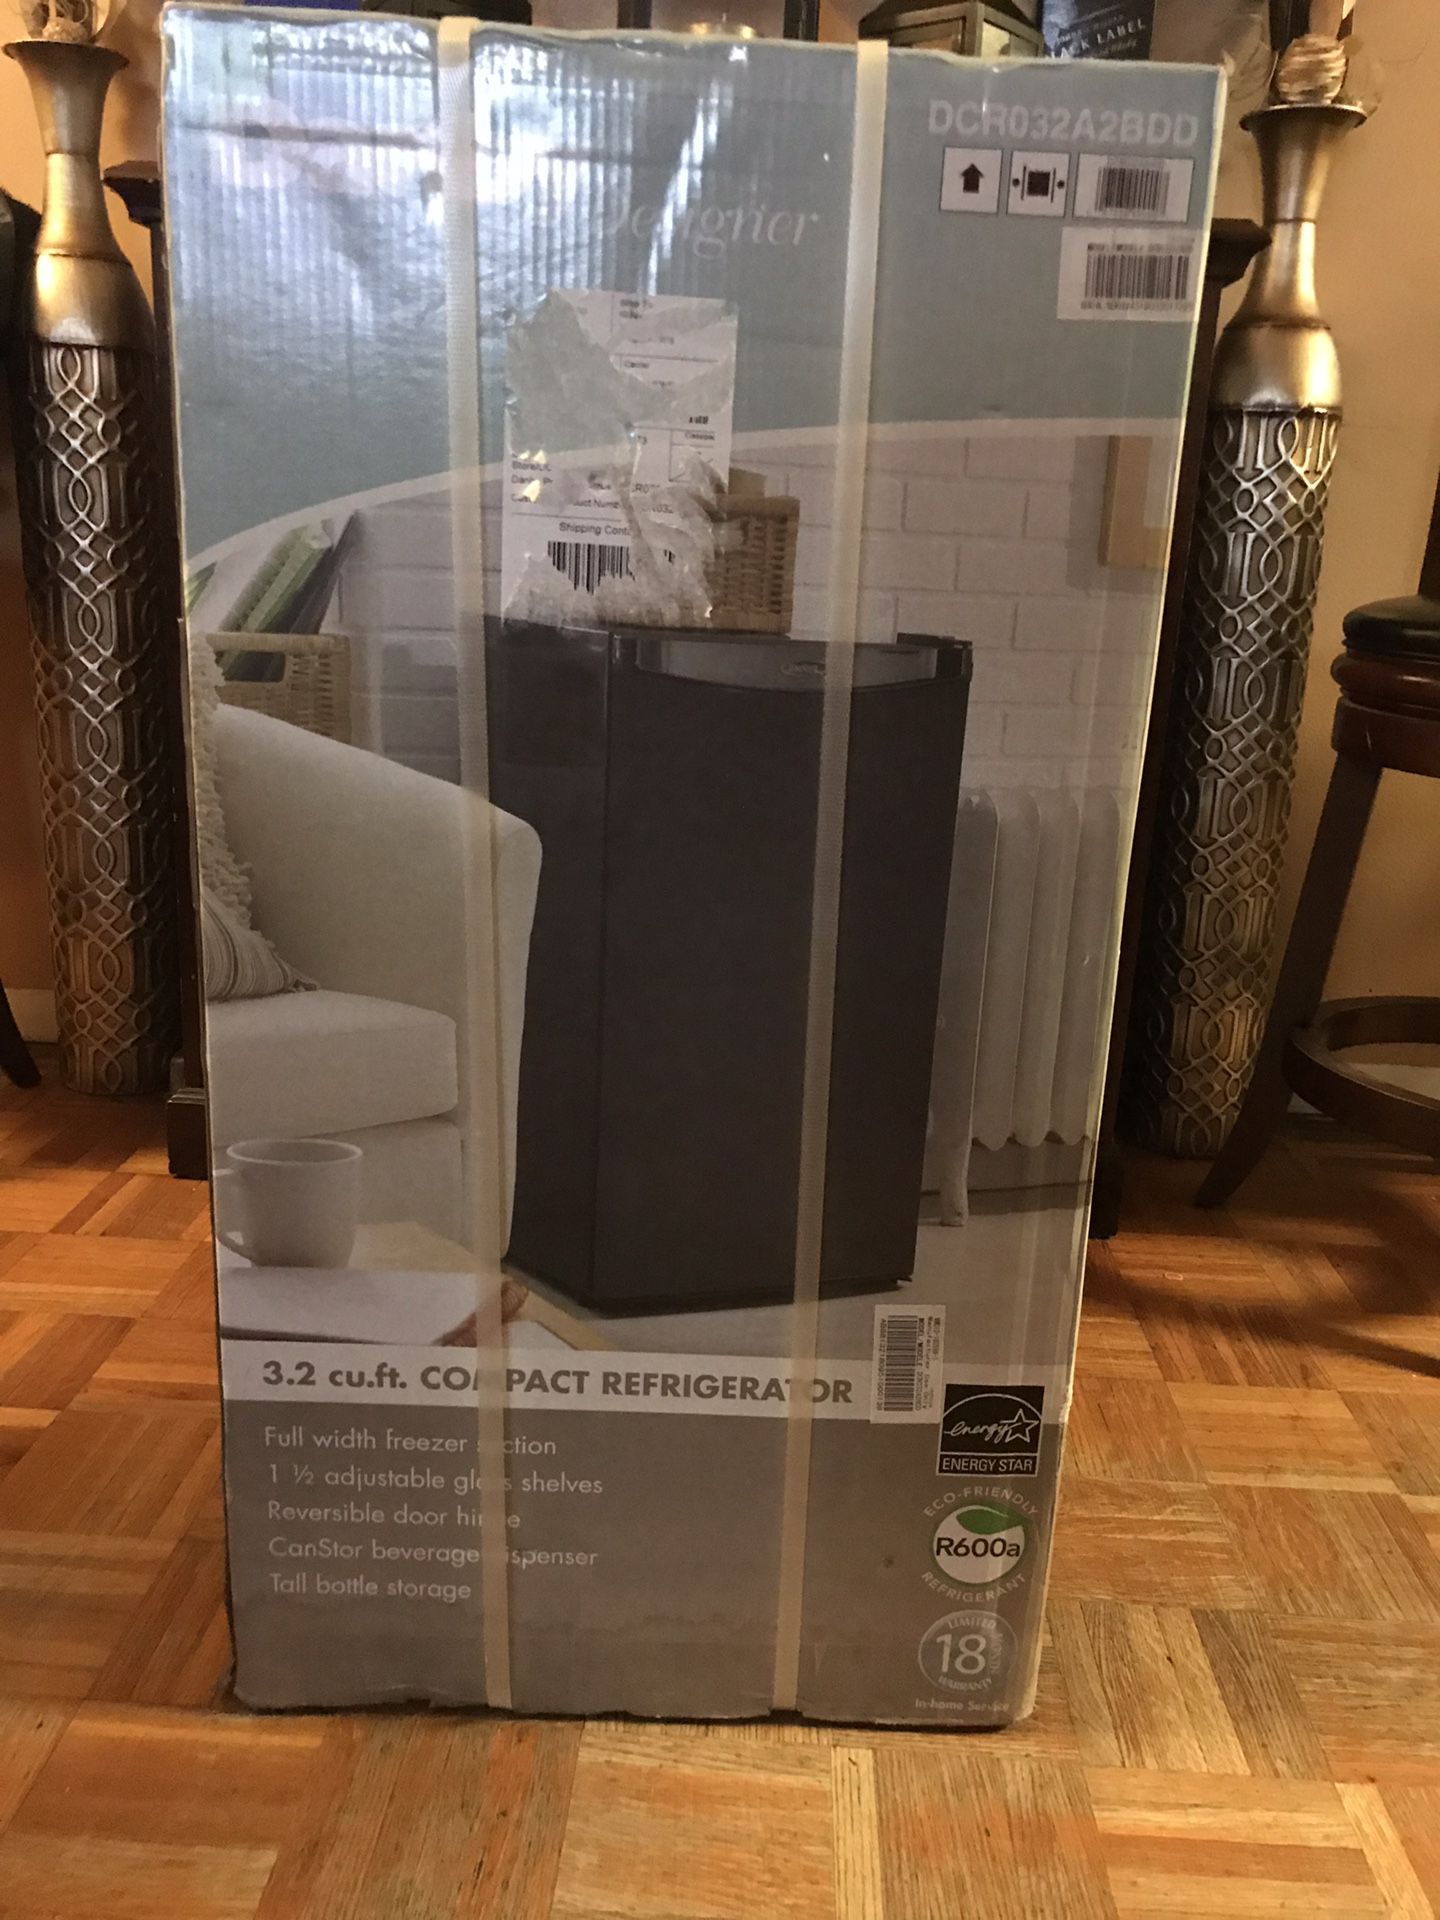 DANBY Refrigerator and Freezer,3.2 cu ft,Black DCR032A2BDD